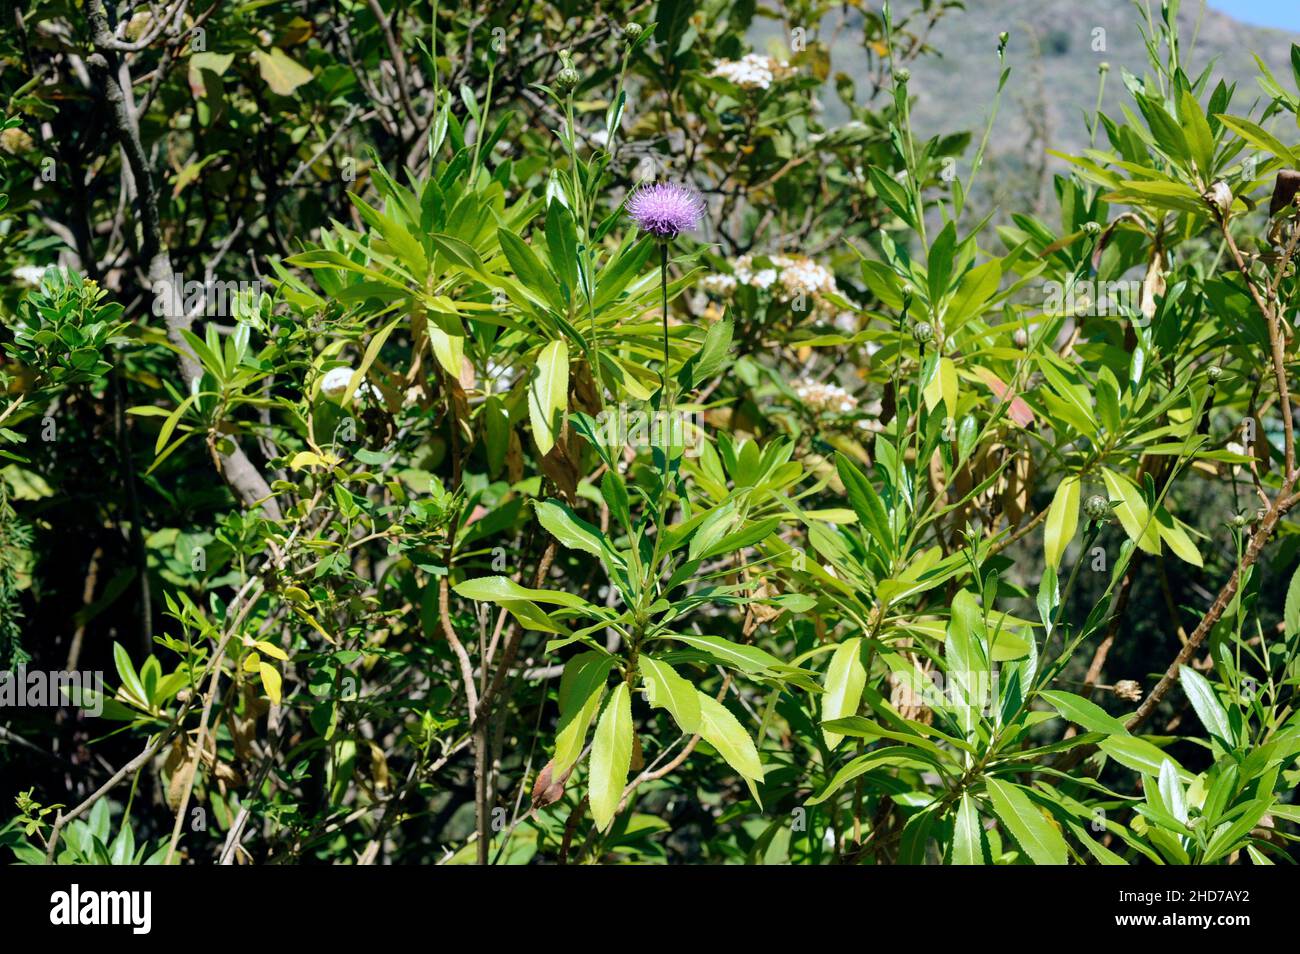 Cabezon de Teneguia (Cheirolophus junonianus) es un arbusto endémico de La Palma, Islas Canarias. Foto de stock